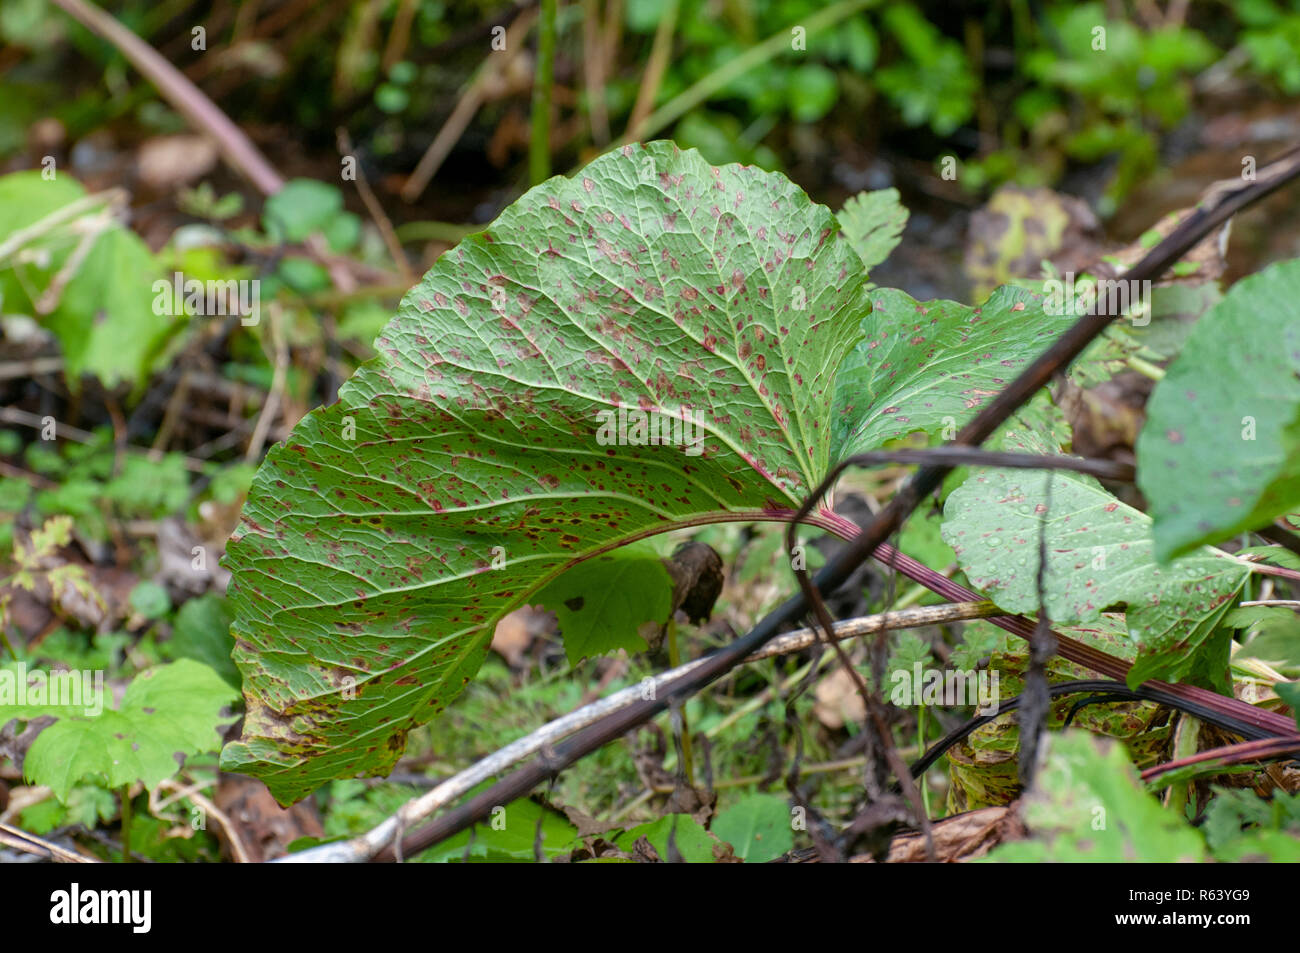 Nahaufnahme eines Blattes mit dem Rost wie Flecken durch Skala Insekten der Coccidae Familie verursacht. Im Stubaital, Tirol, Österreich im September fotografiert. Stockfoto